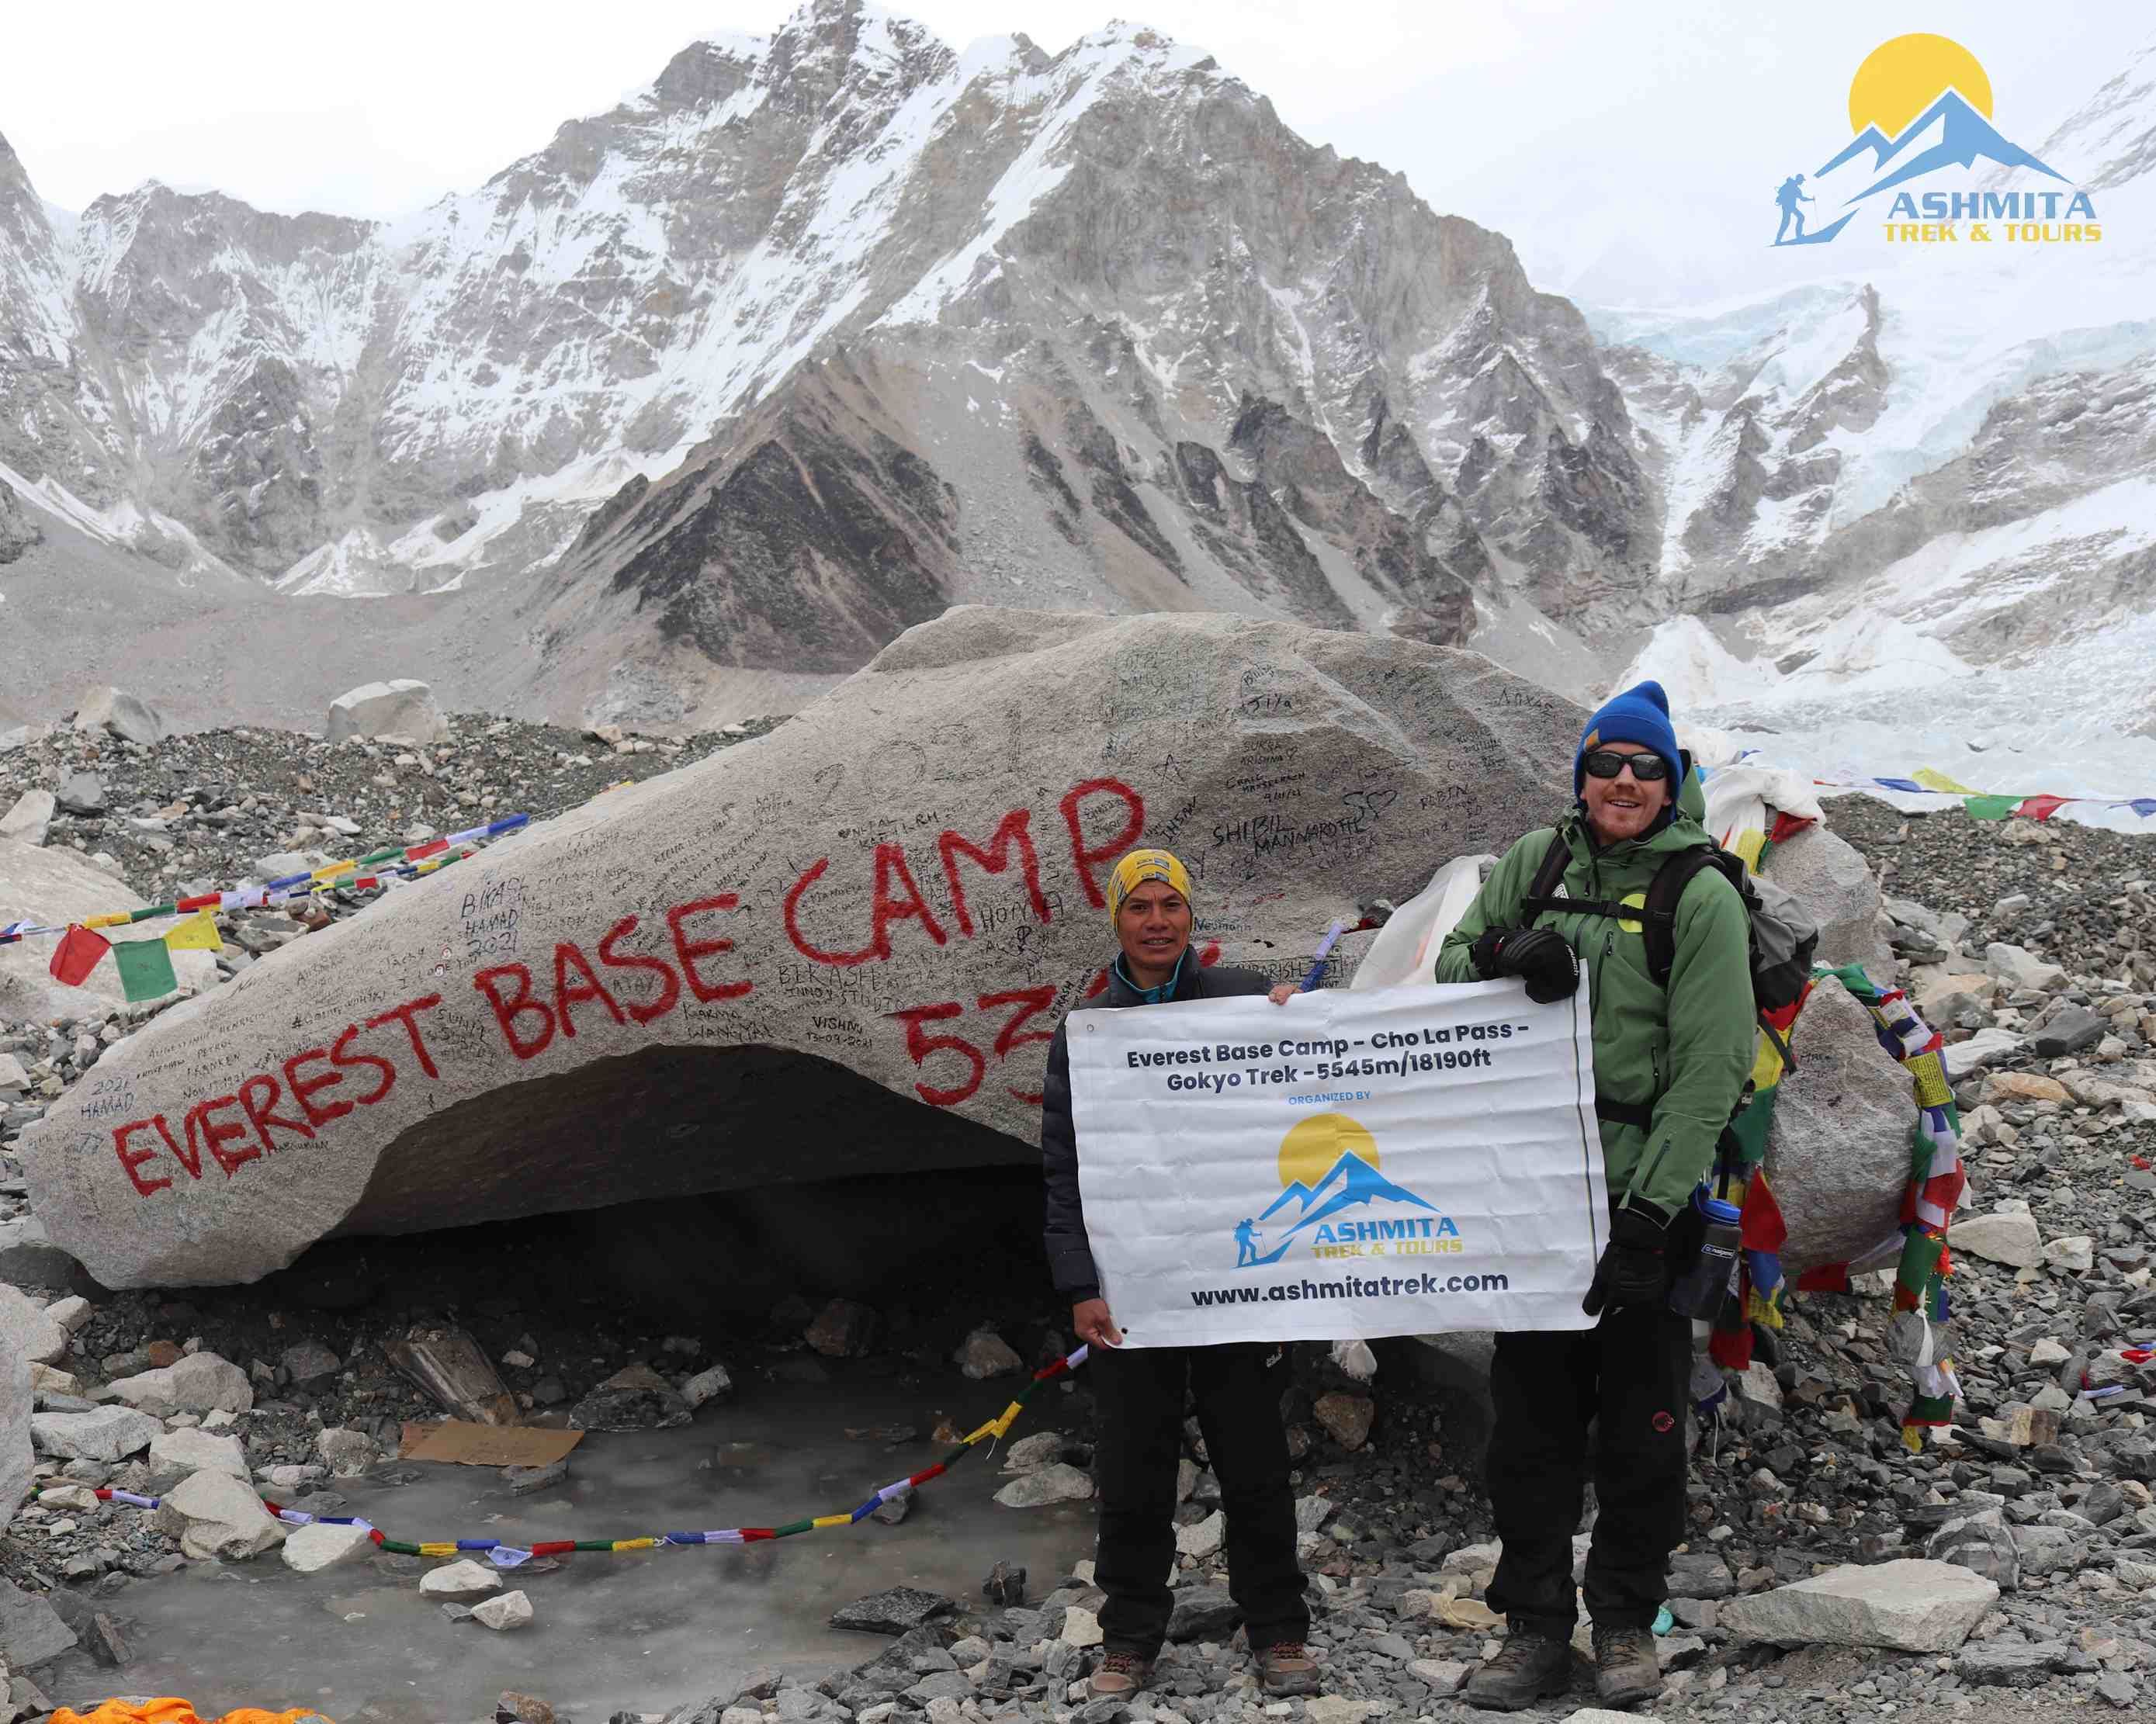 At Everest base Camp